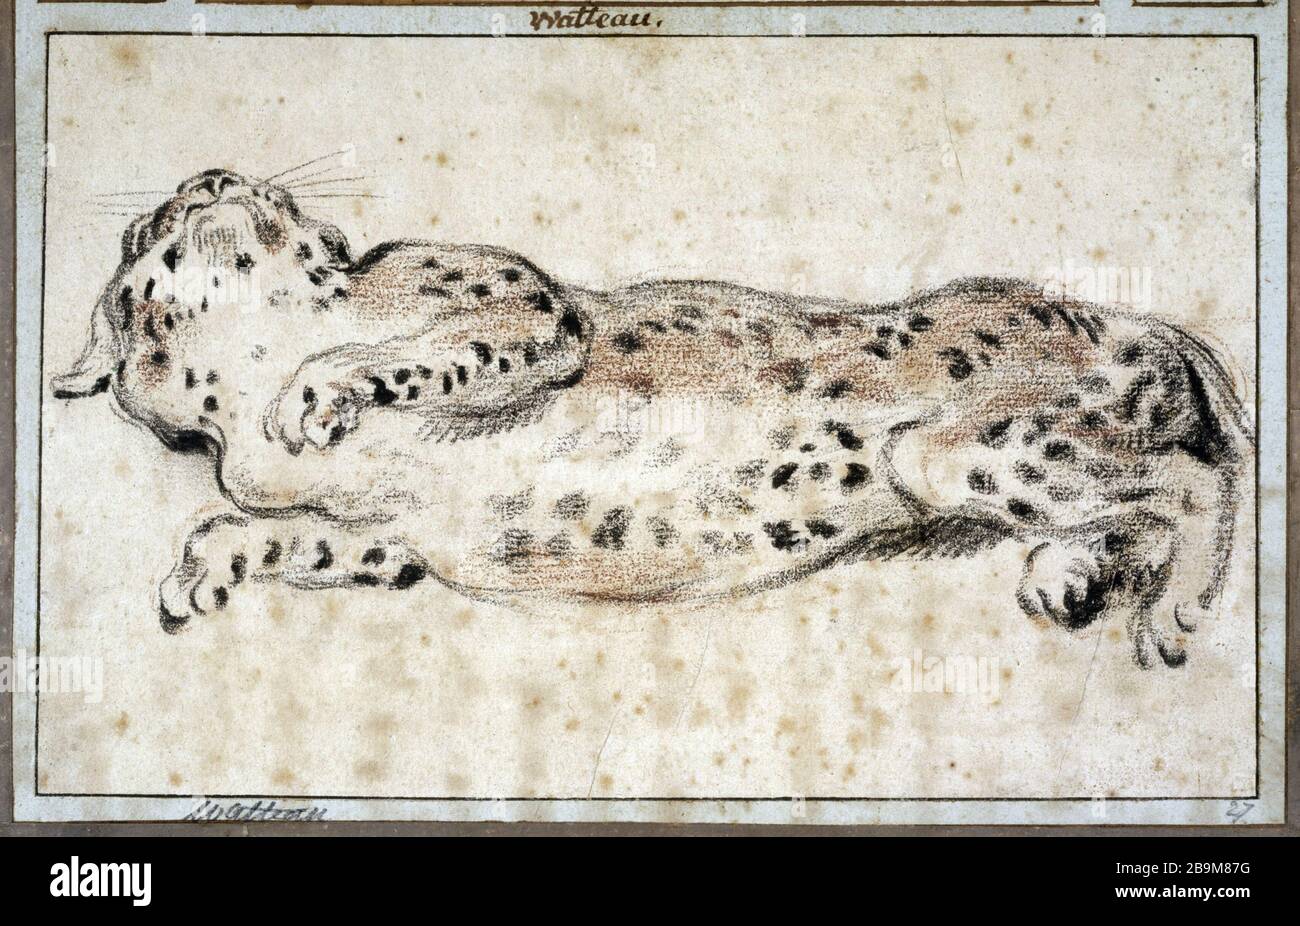 ETUDE Leopard stretching Jean-Antoine Watteau (1684-1721). 'Etude de léopard s'étirant, vers 1720'. Pierre noire et sanguine. Paris, musée Cognacq-Jay. Stock Photo